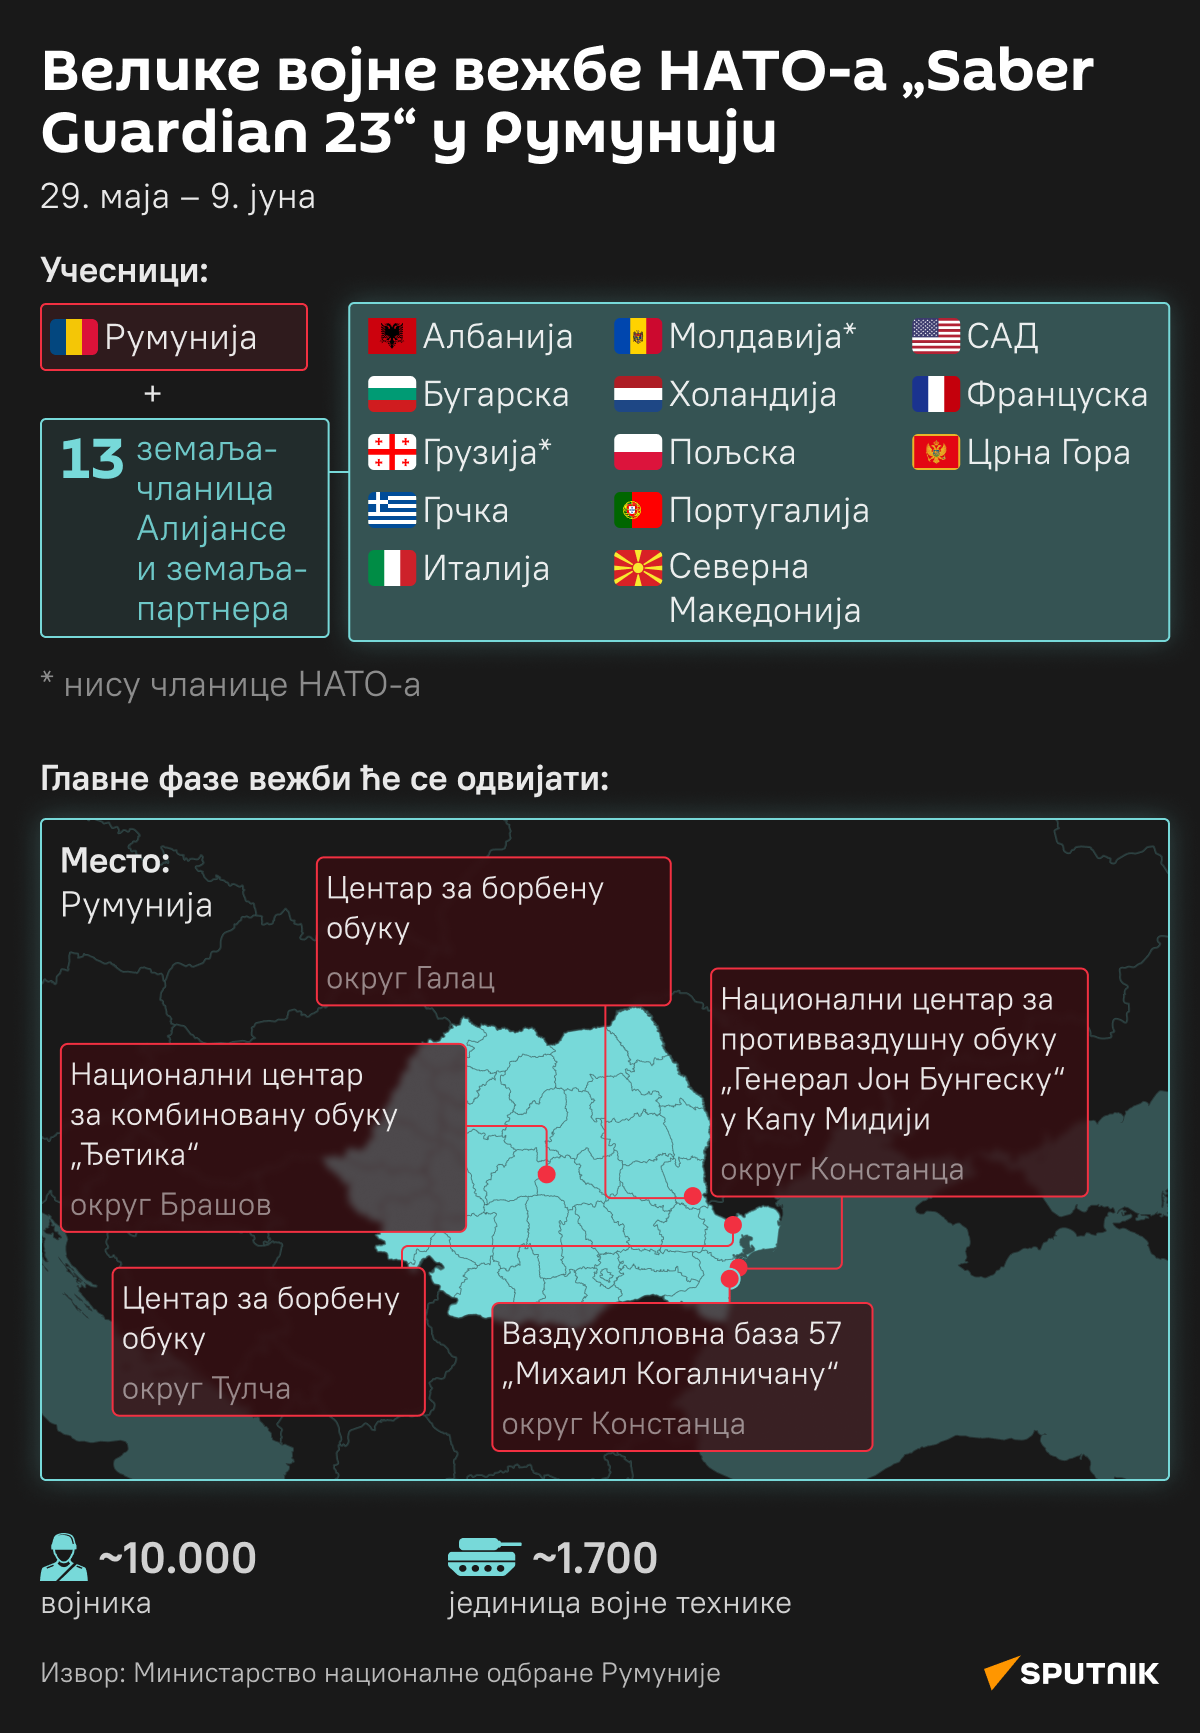 Инфографика војне вежбе НАТО-а Saber Guardian 23 у Румунији ЋИРИЛИЦА деск - Sputnik Србија